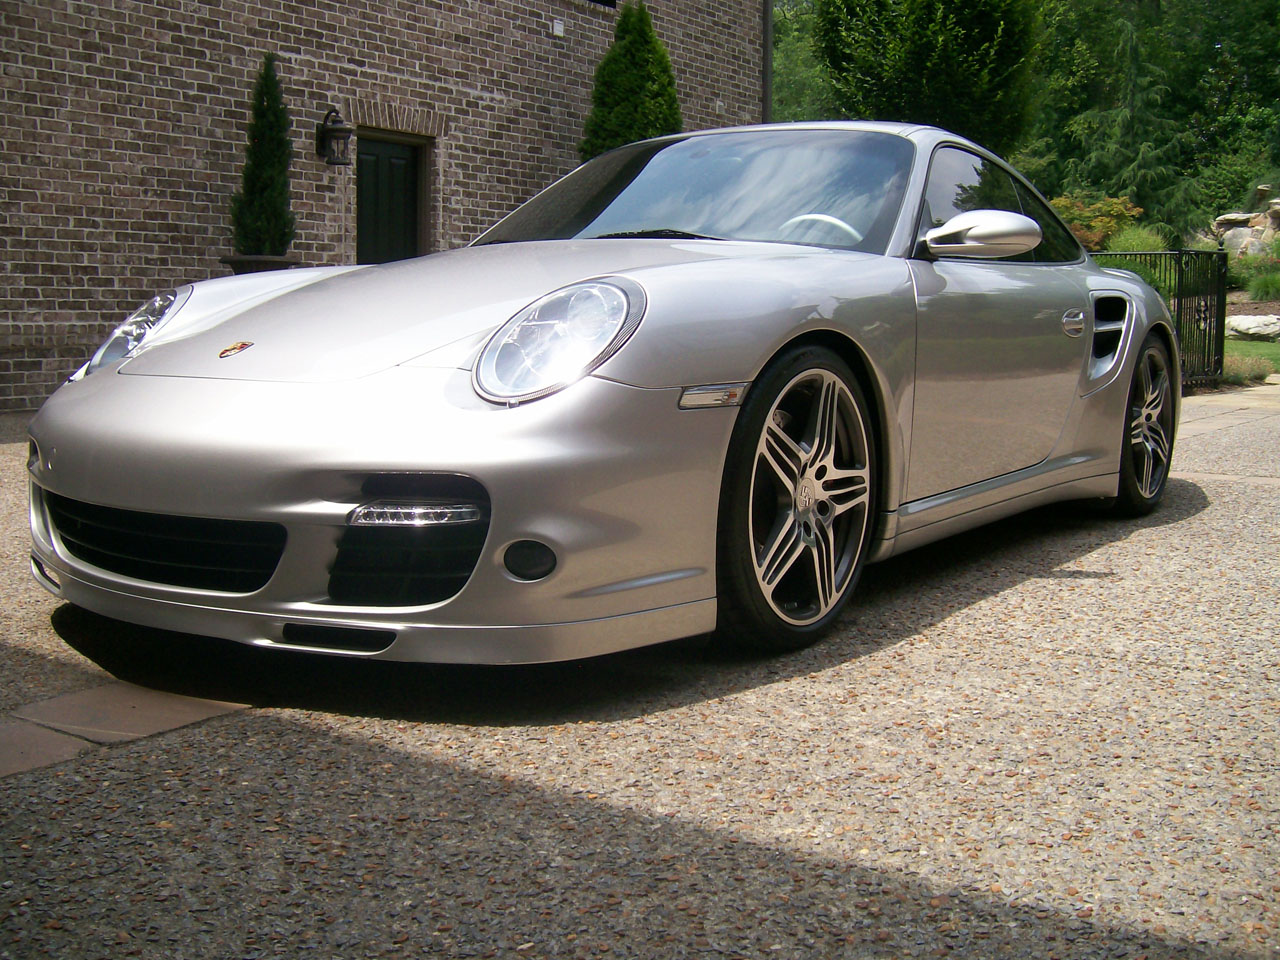  2007 Porsche 911 Turbo SPI 750